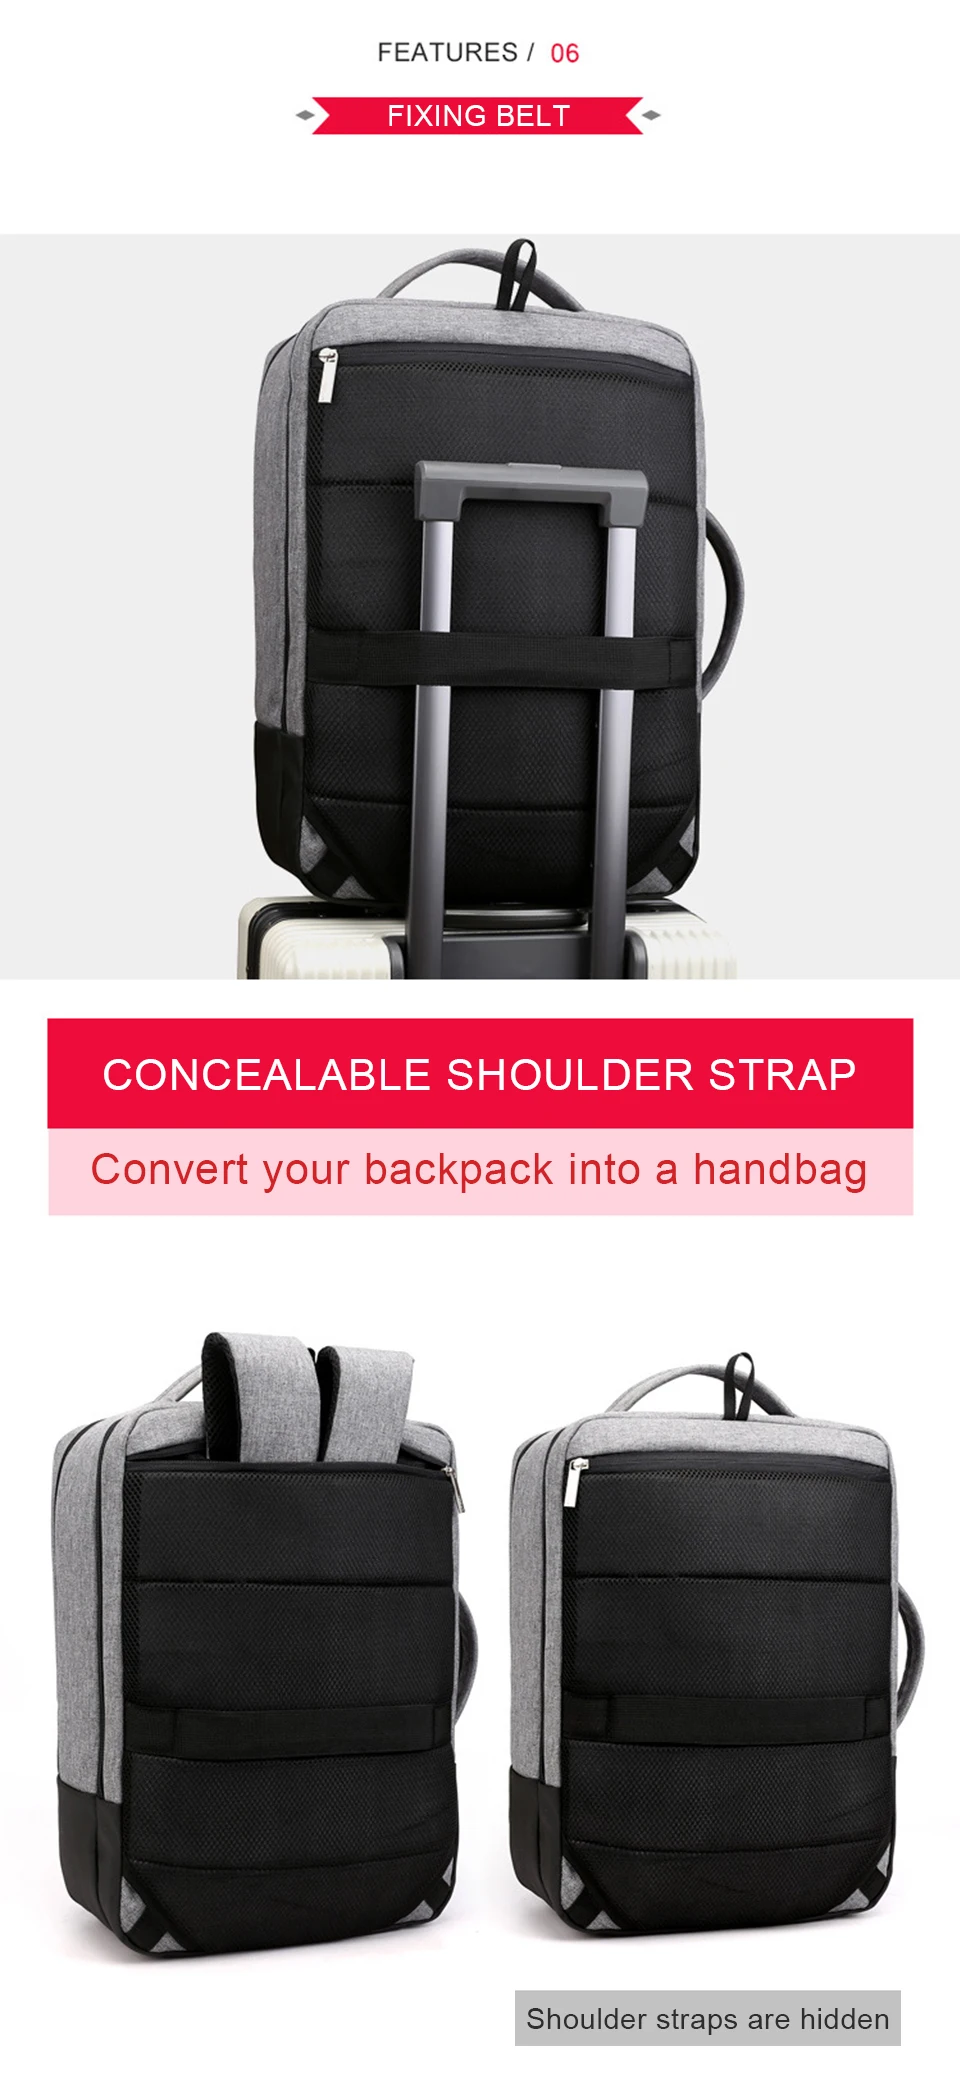 Мужской рюкзак, рюкзаки для ноутбука, 17 дюймов, 15,6 дюймов, противоугонные мужские деловые сумки, рюкзак для ноутбука, рюкзак для путешествий, офисный женский рюкзак для путешествий